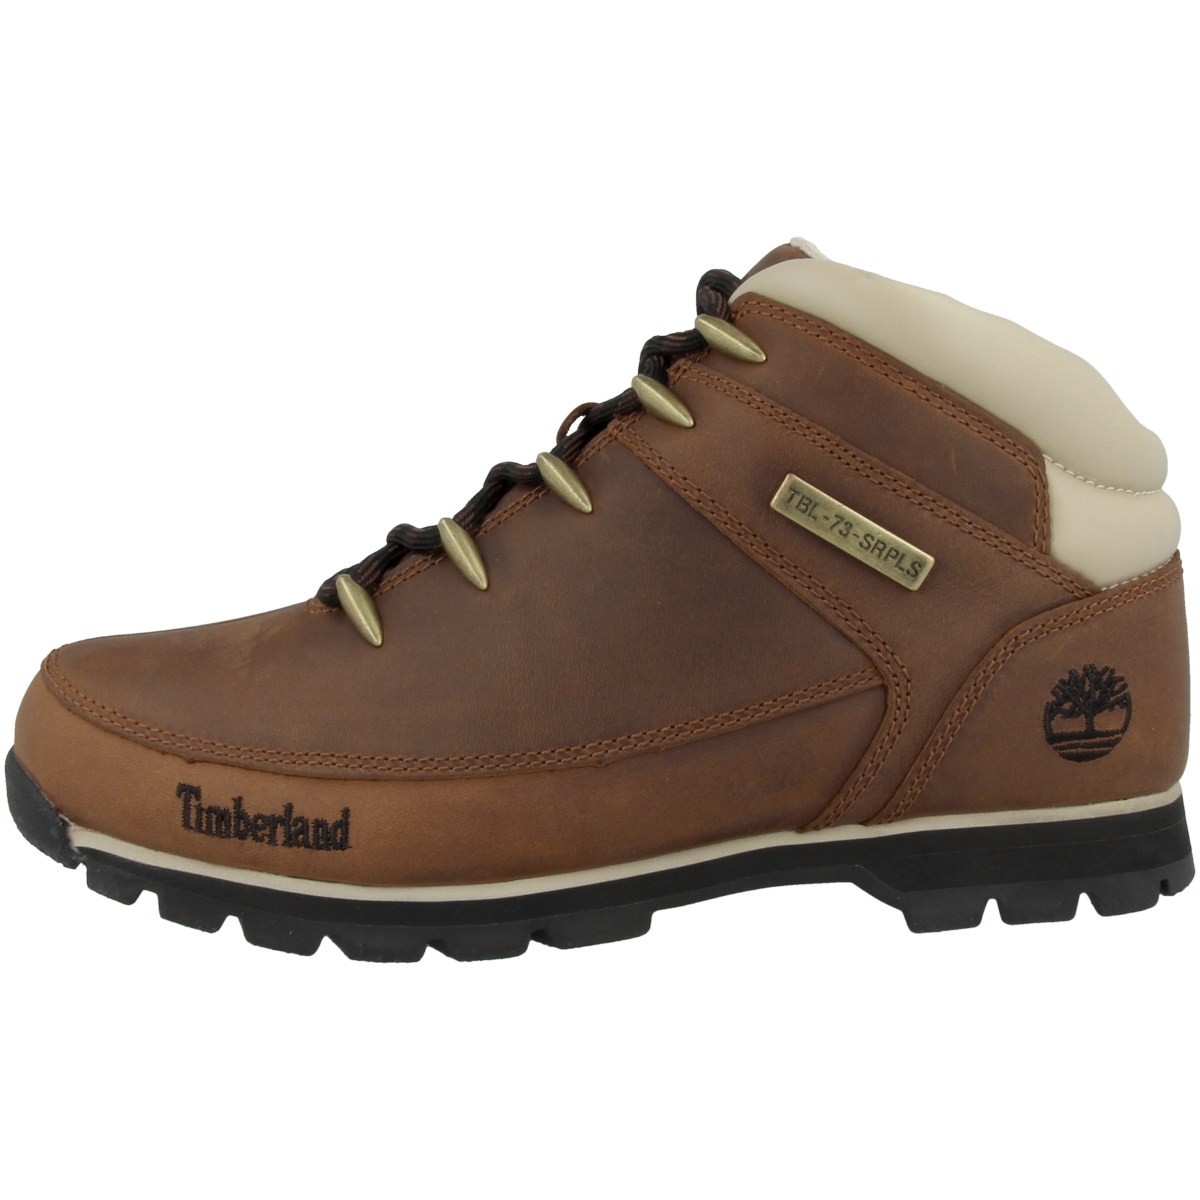 Ботинки Timberland Schnür Euro Sprint Mid Hiker, коричневый ботинки timberland euro sprint hiker hiking коричневый